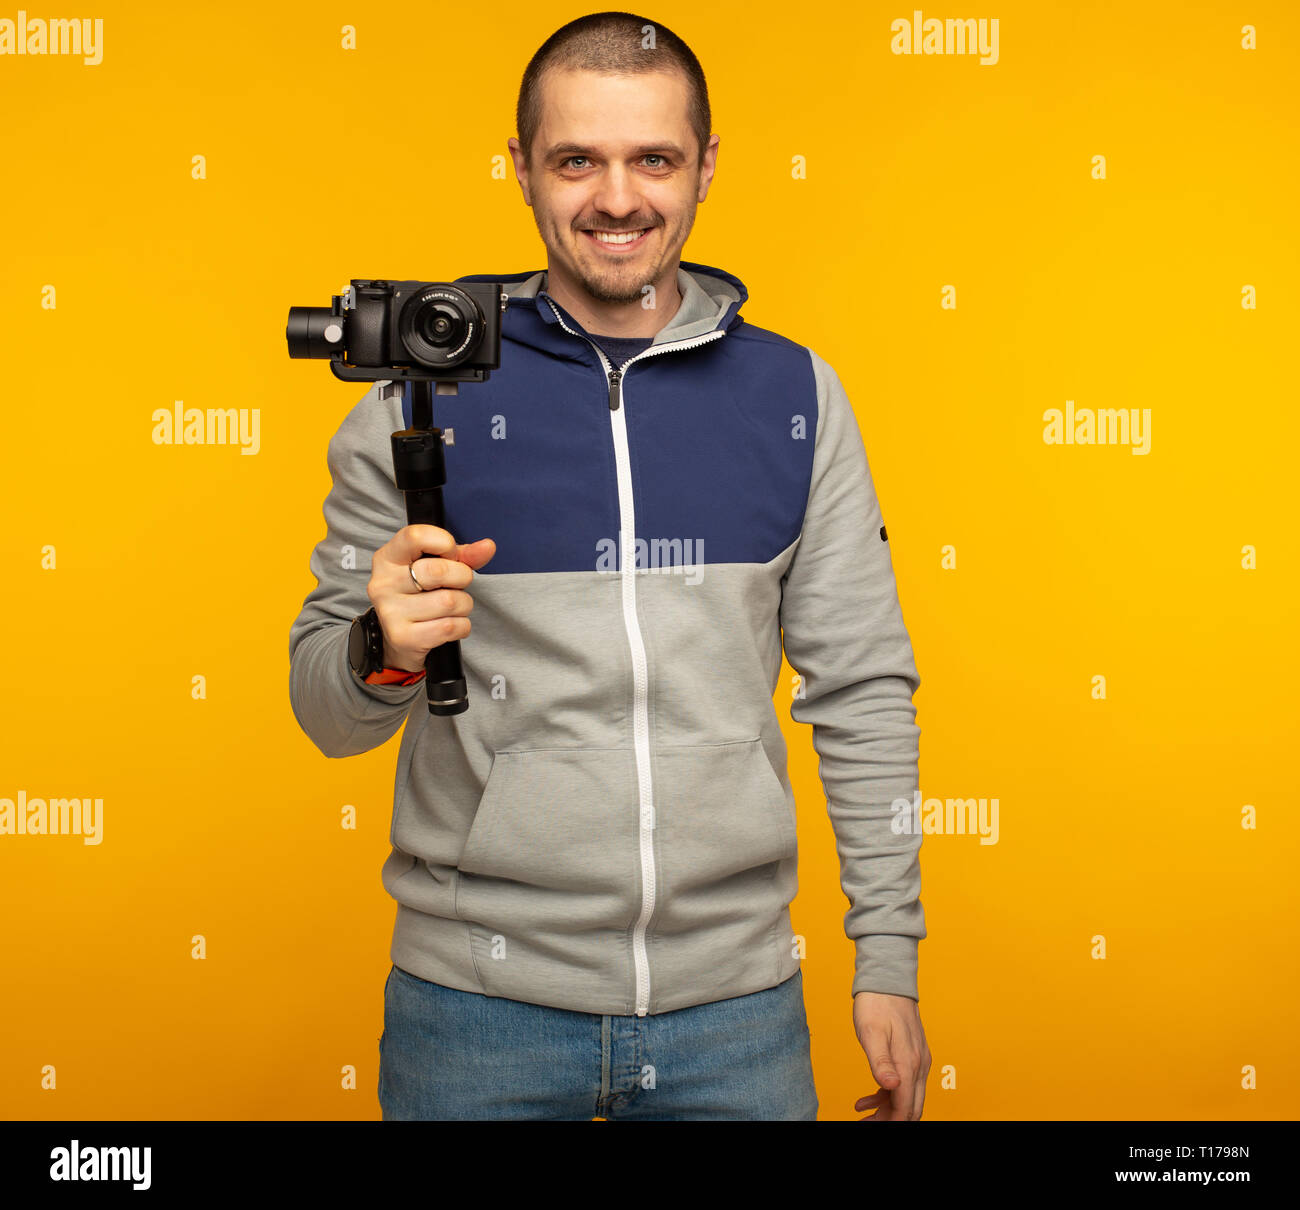 Homme vidéaste ou blogger avec caméra sur berceau Banque D'Images